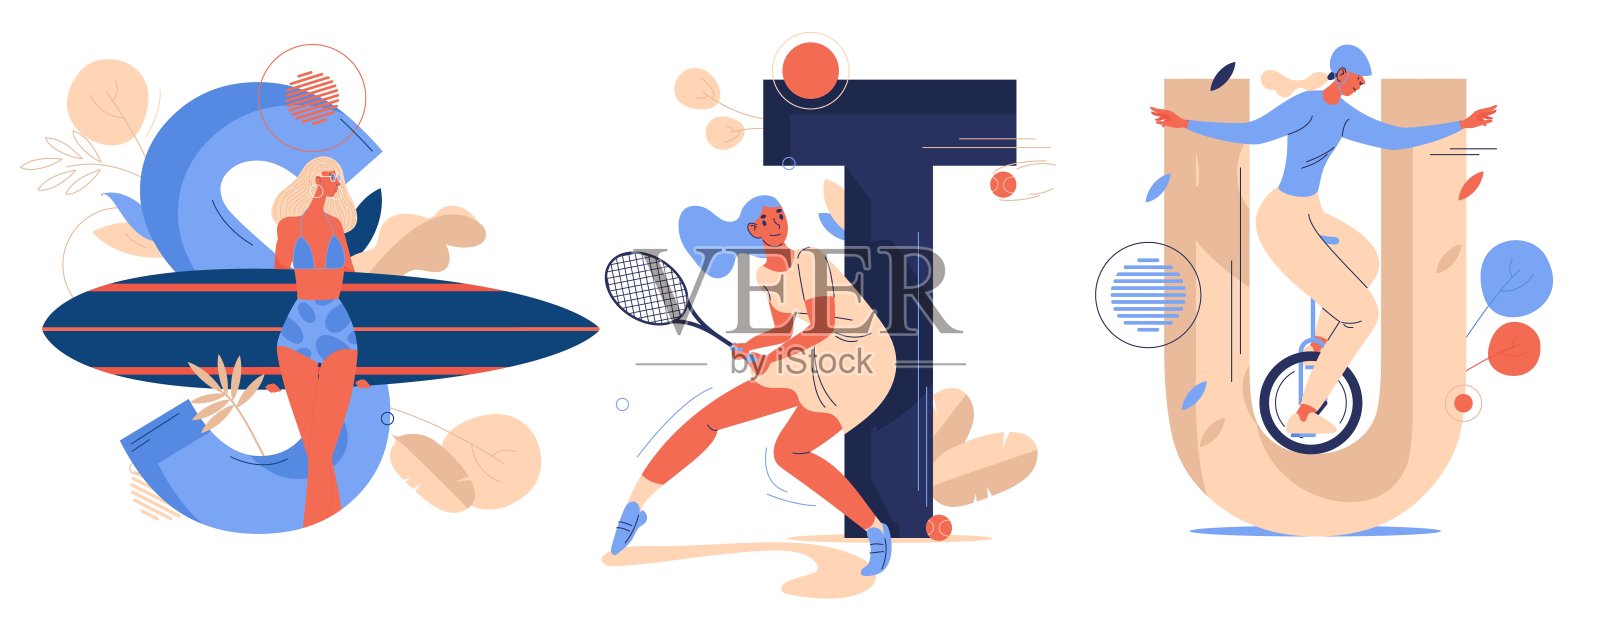 体育信件与训练妇女微笑。英文字母S代表冲浪，T代表网球，U代表独轮车。概念插图绘制在蓝色和橙色卡通风格。插画图片素材